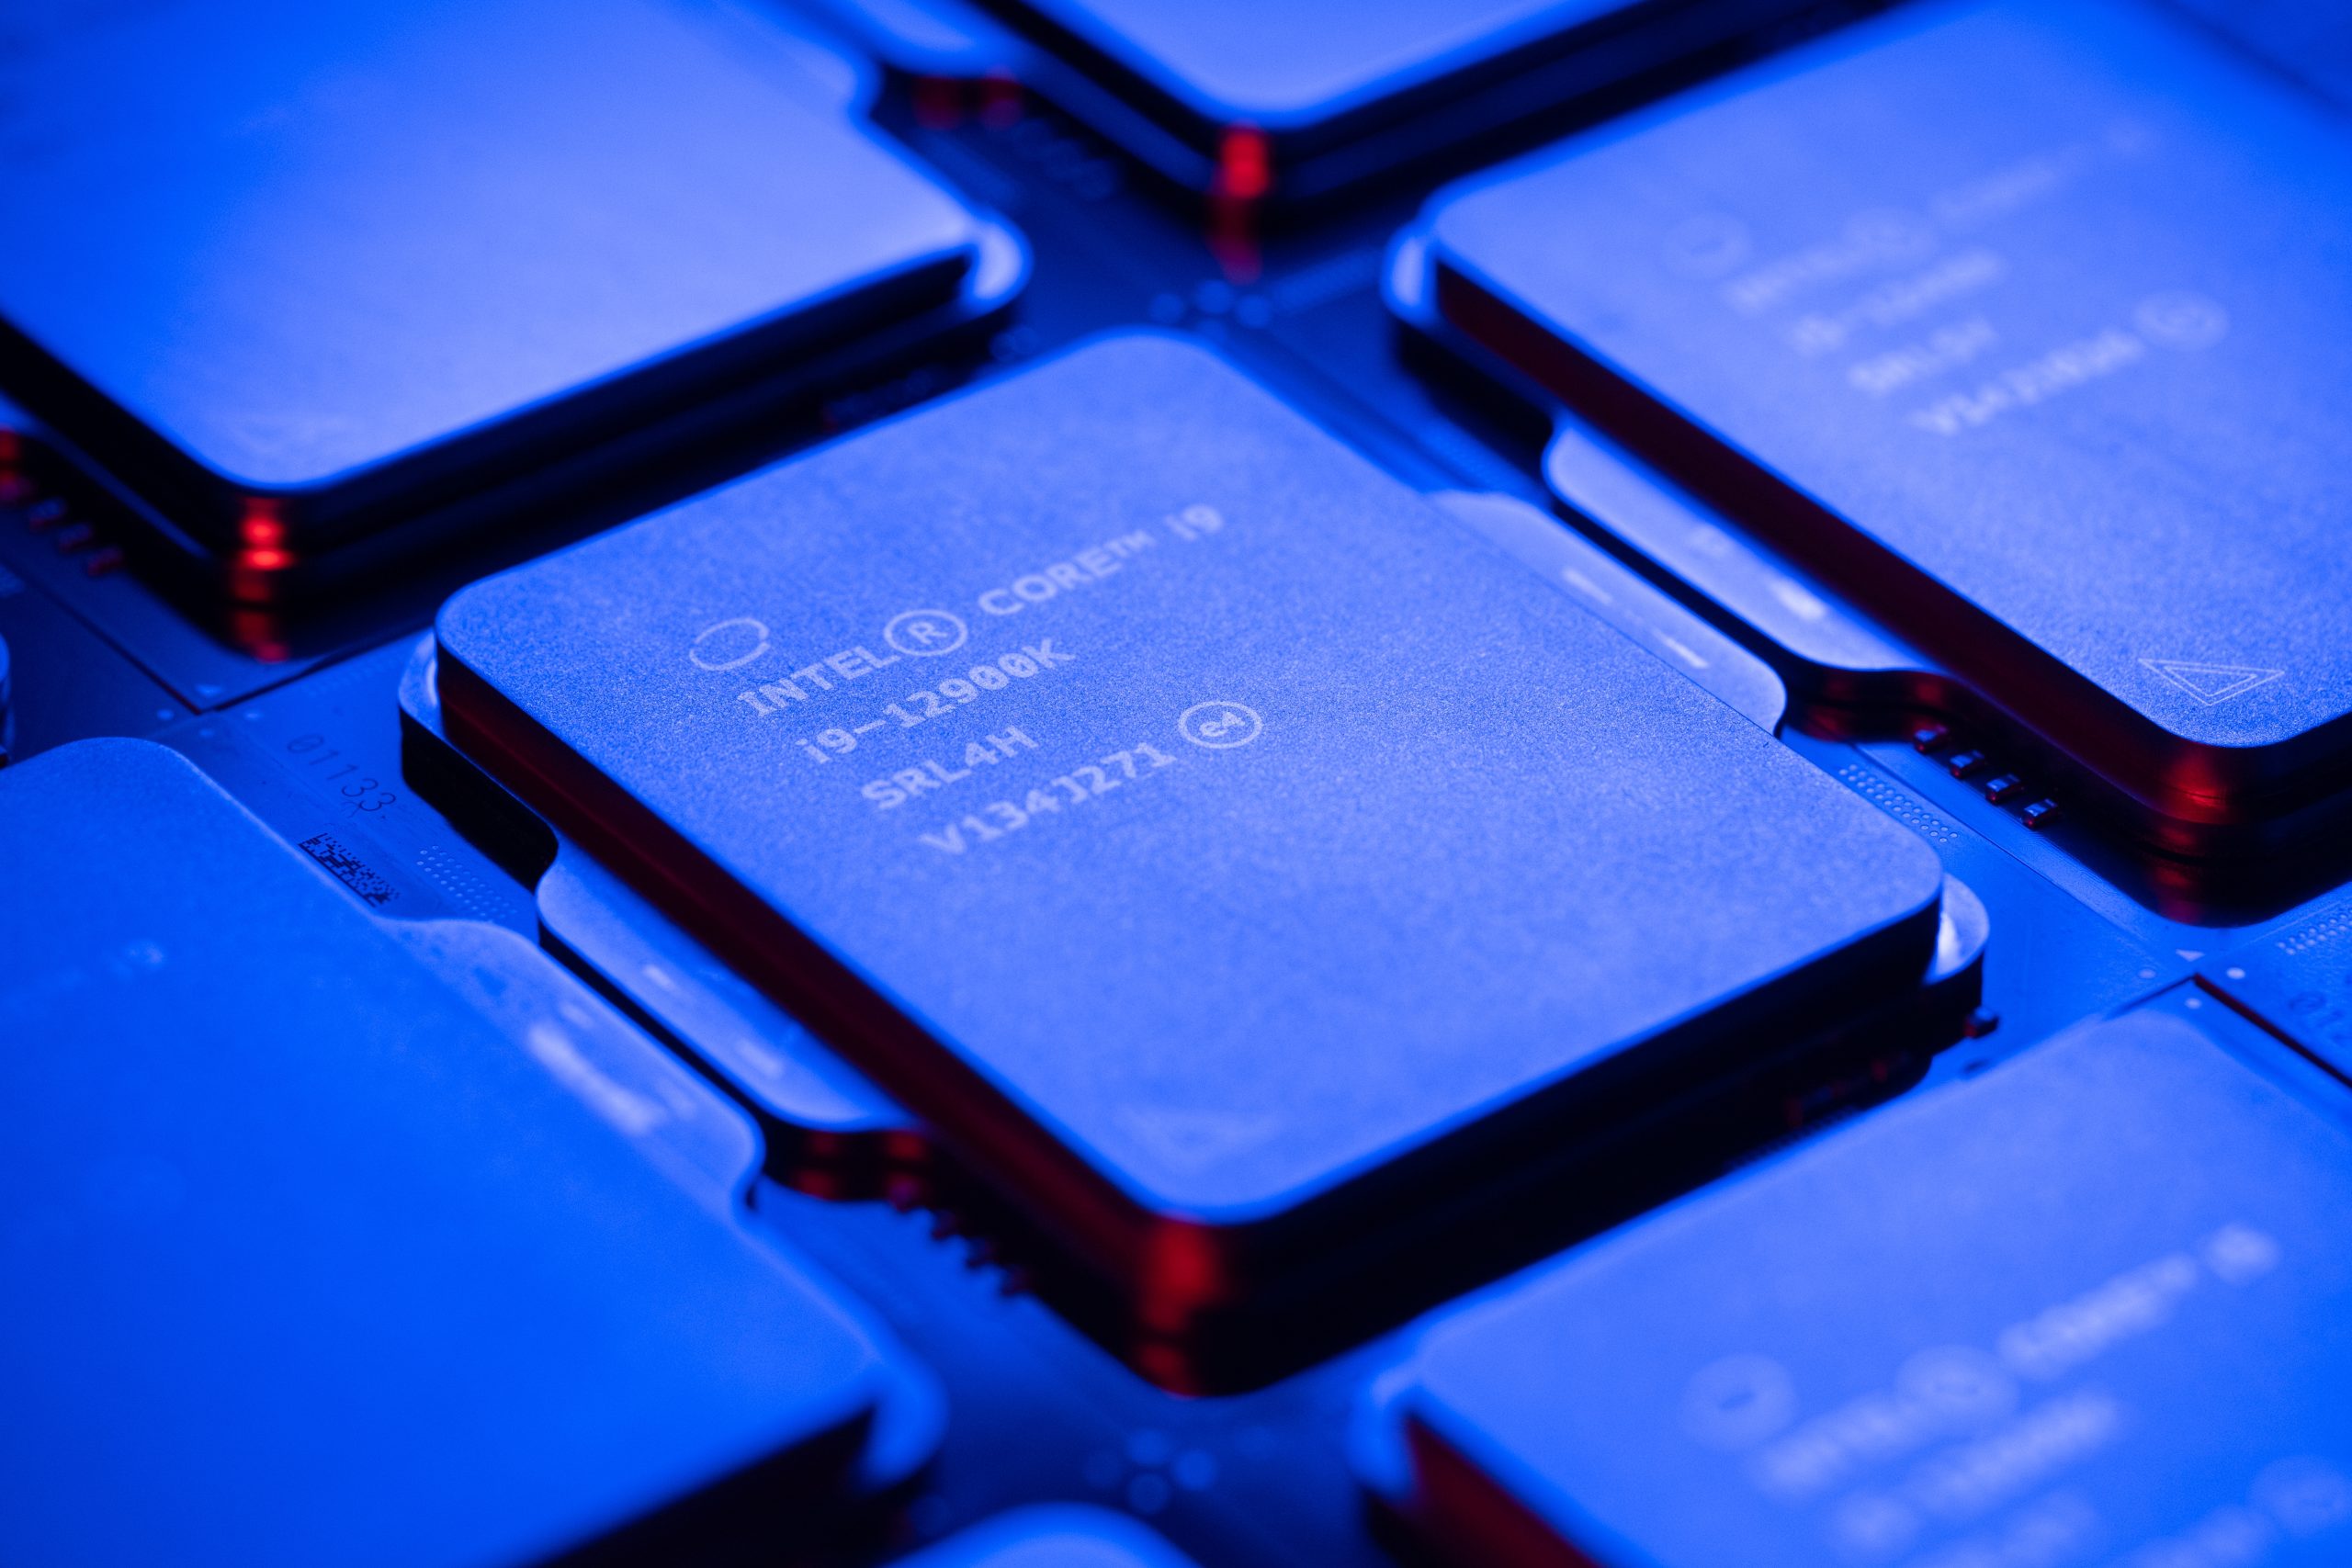 Imagem mostra um processador Core i9 da Intel